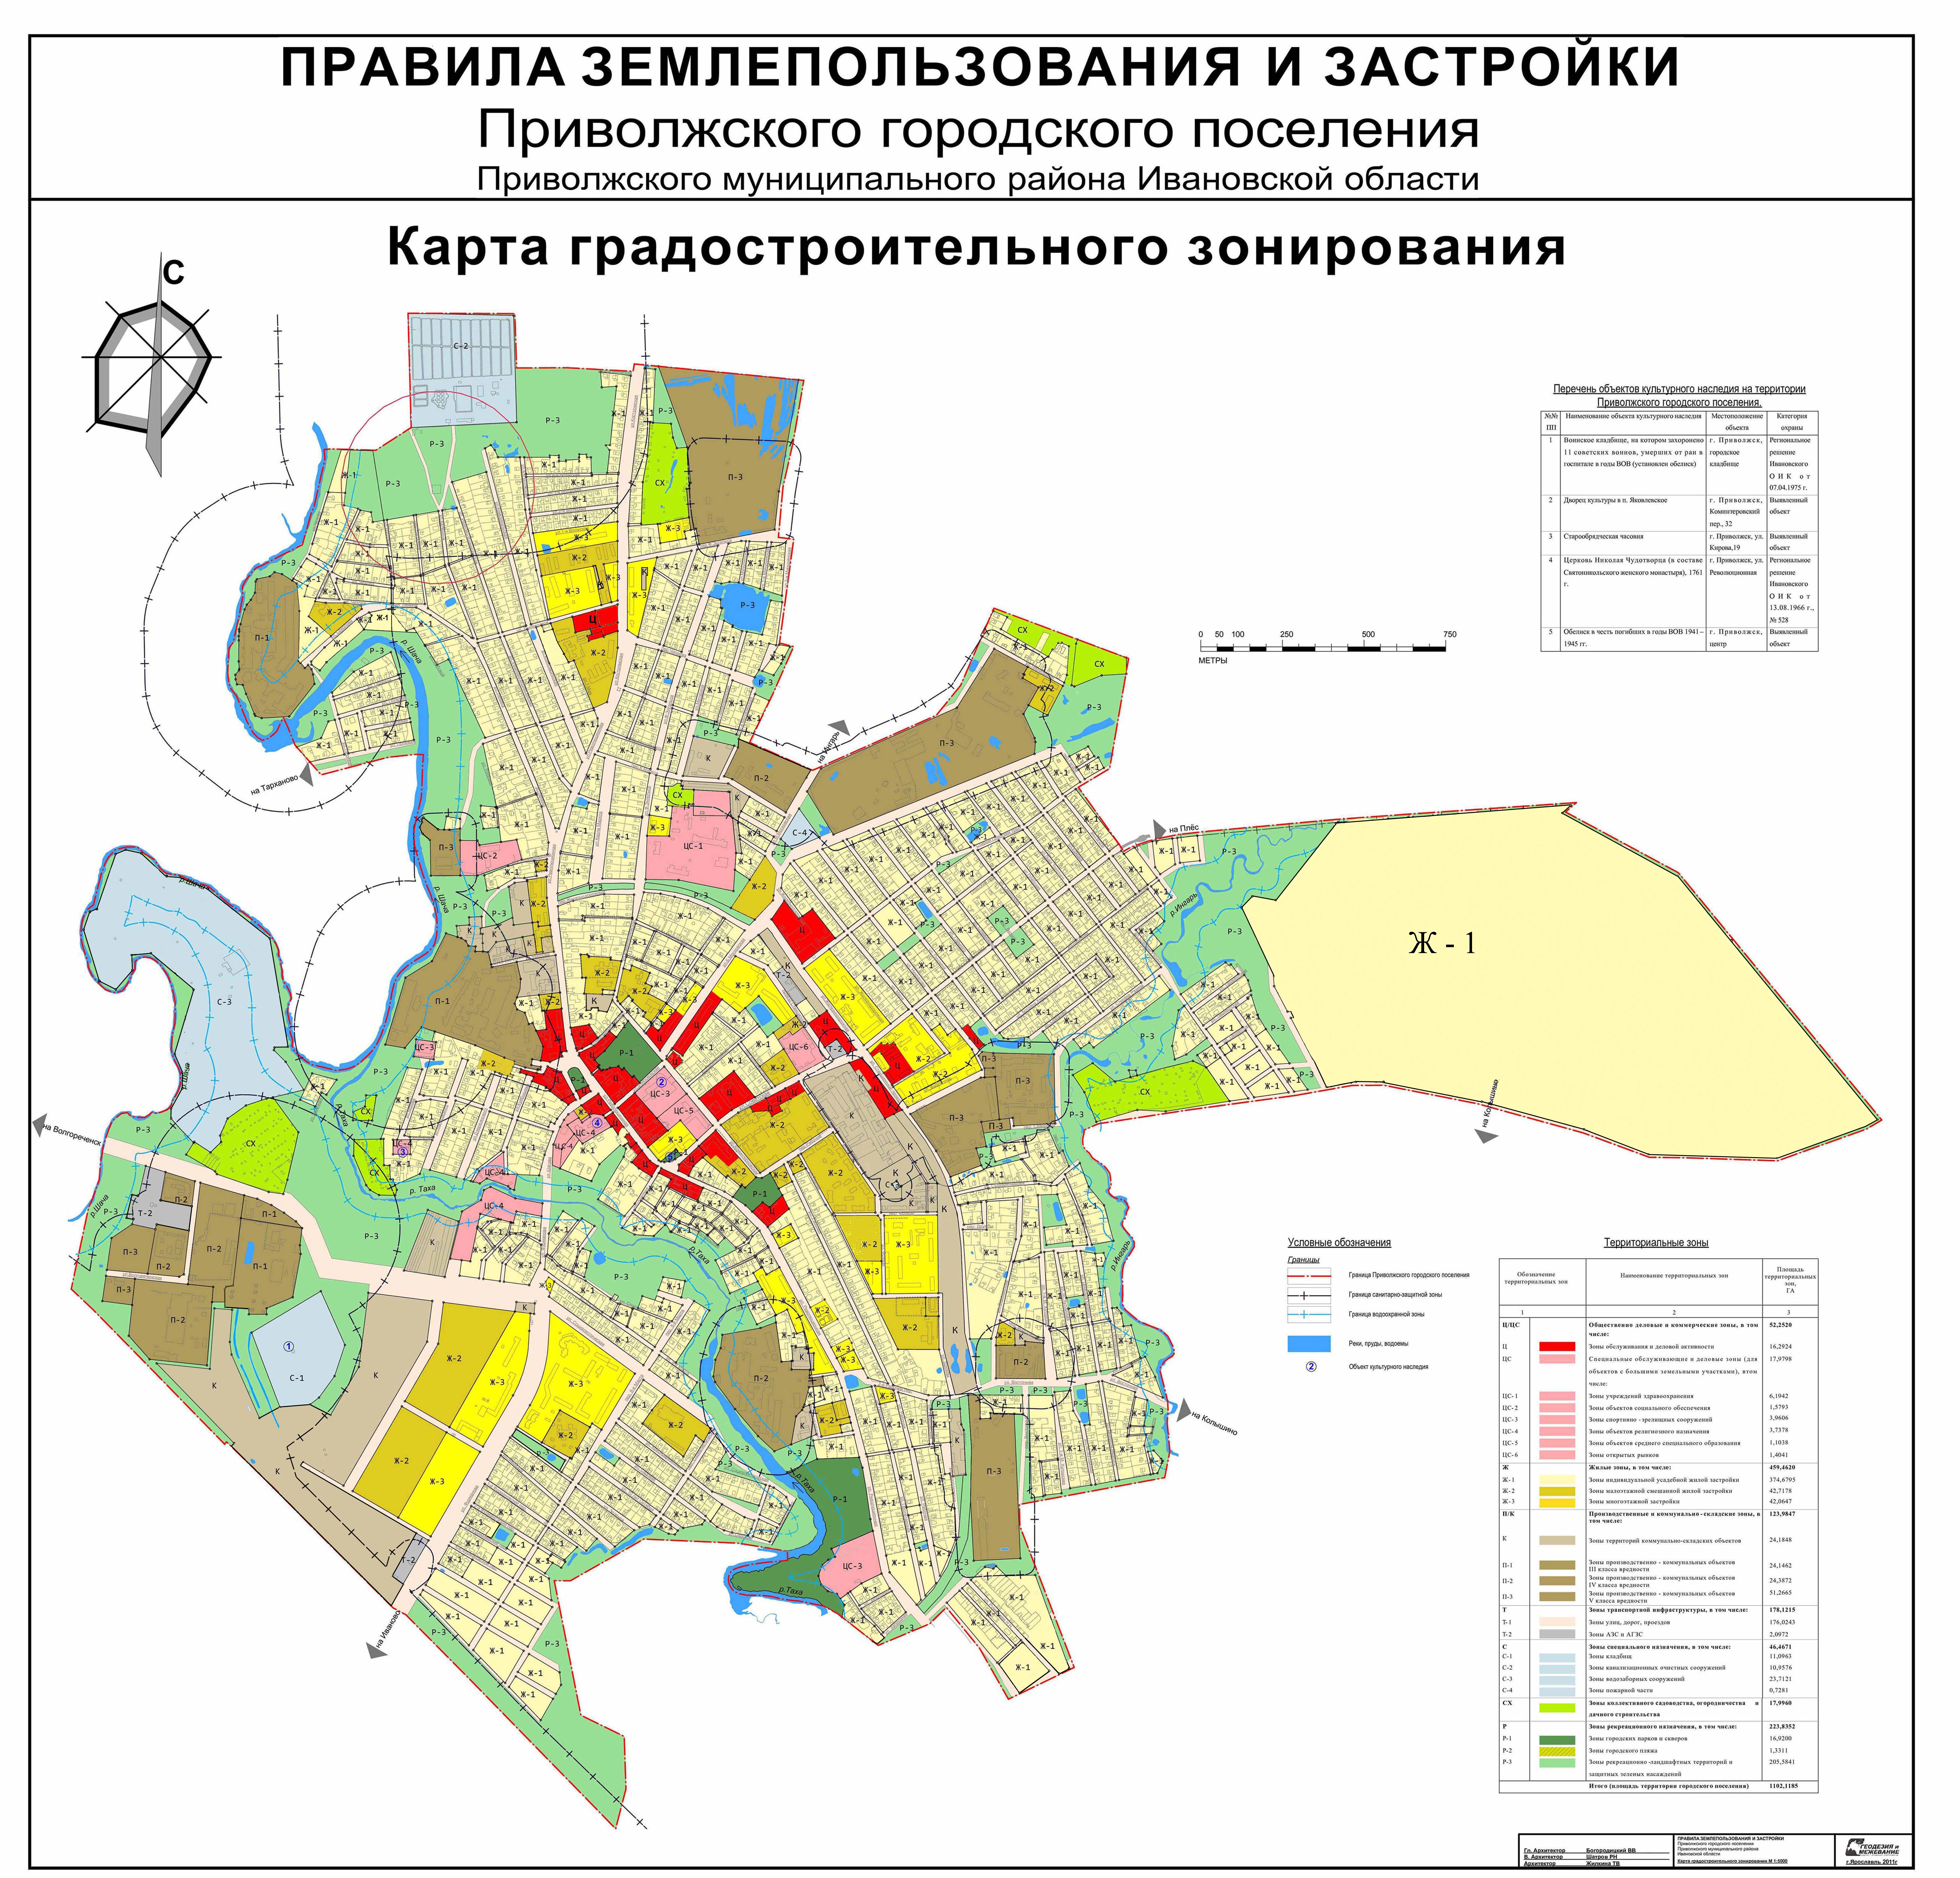 градостроительное зонирование тверской области